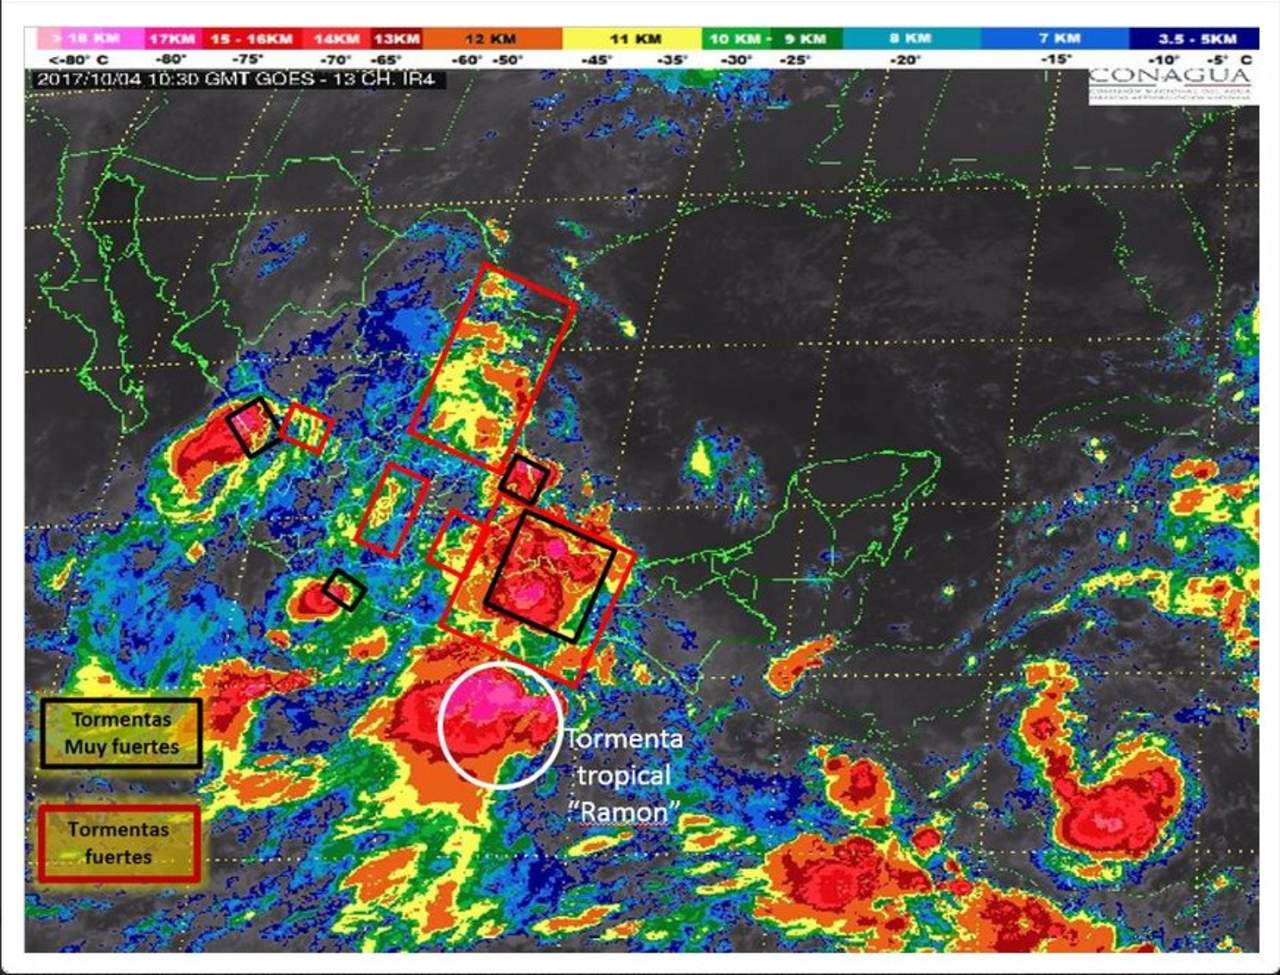  El Servicio Meteorológico Nacional (SMN) pronosticó que en las próximas horas, habrá tormentas fuertes en varios estados del país. (TWITTER)